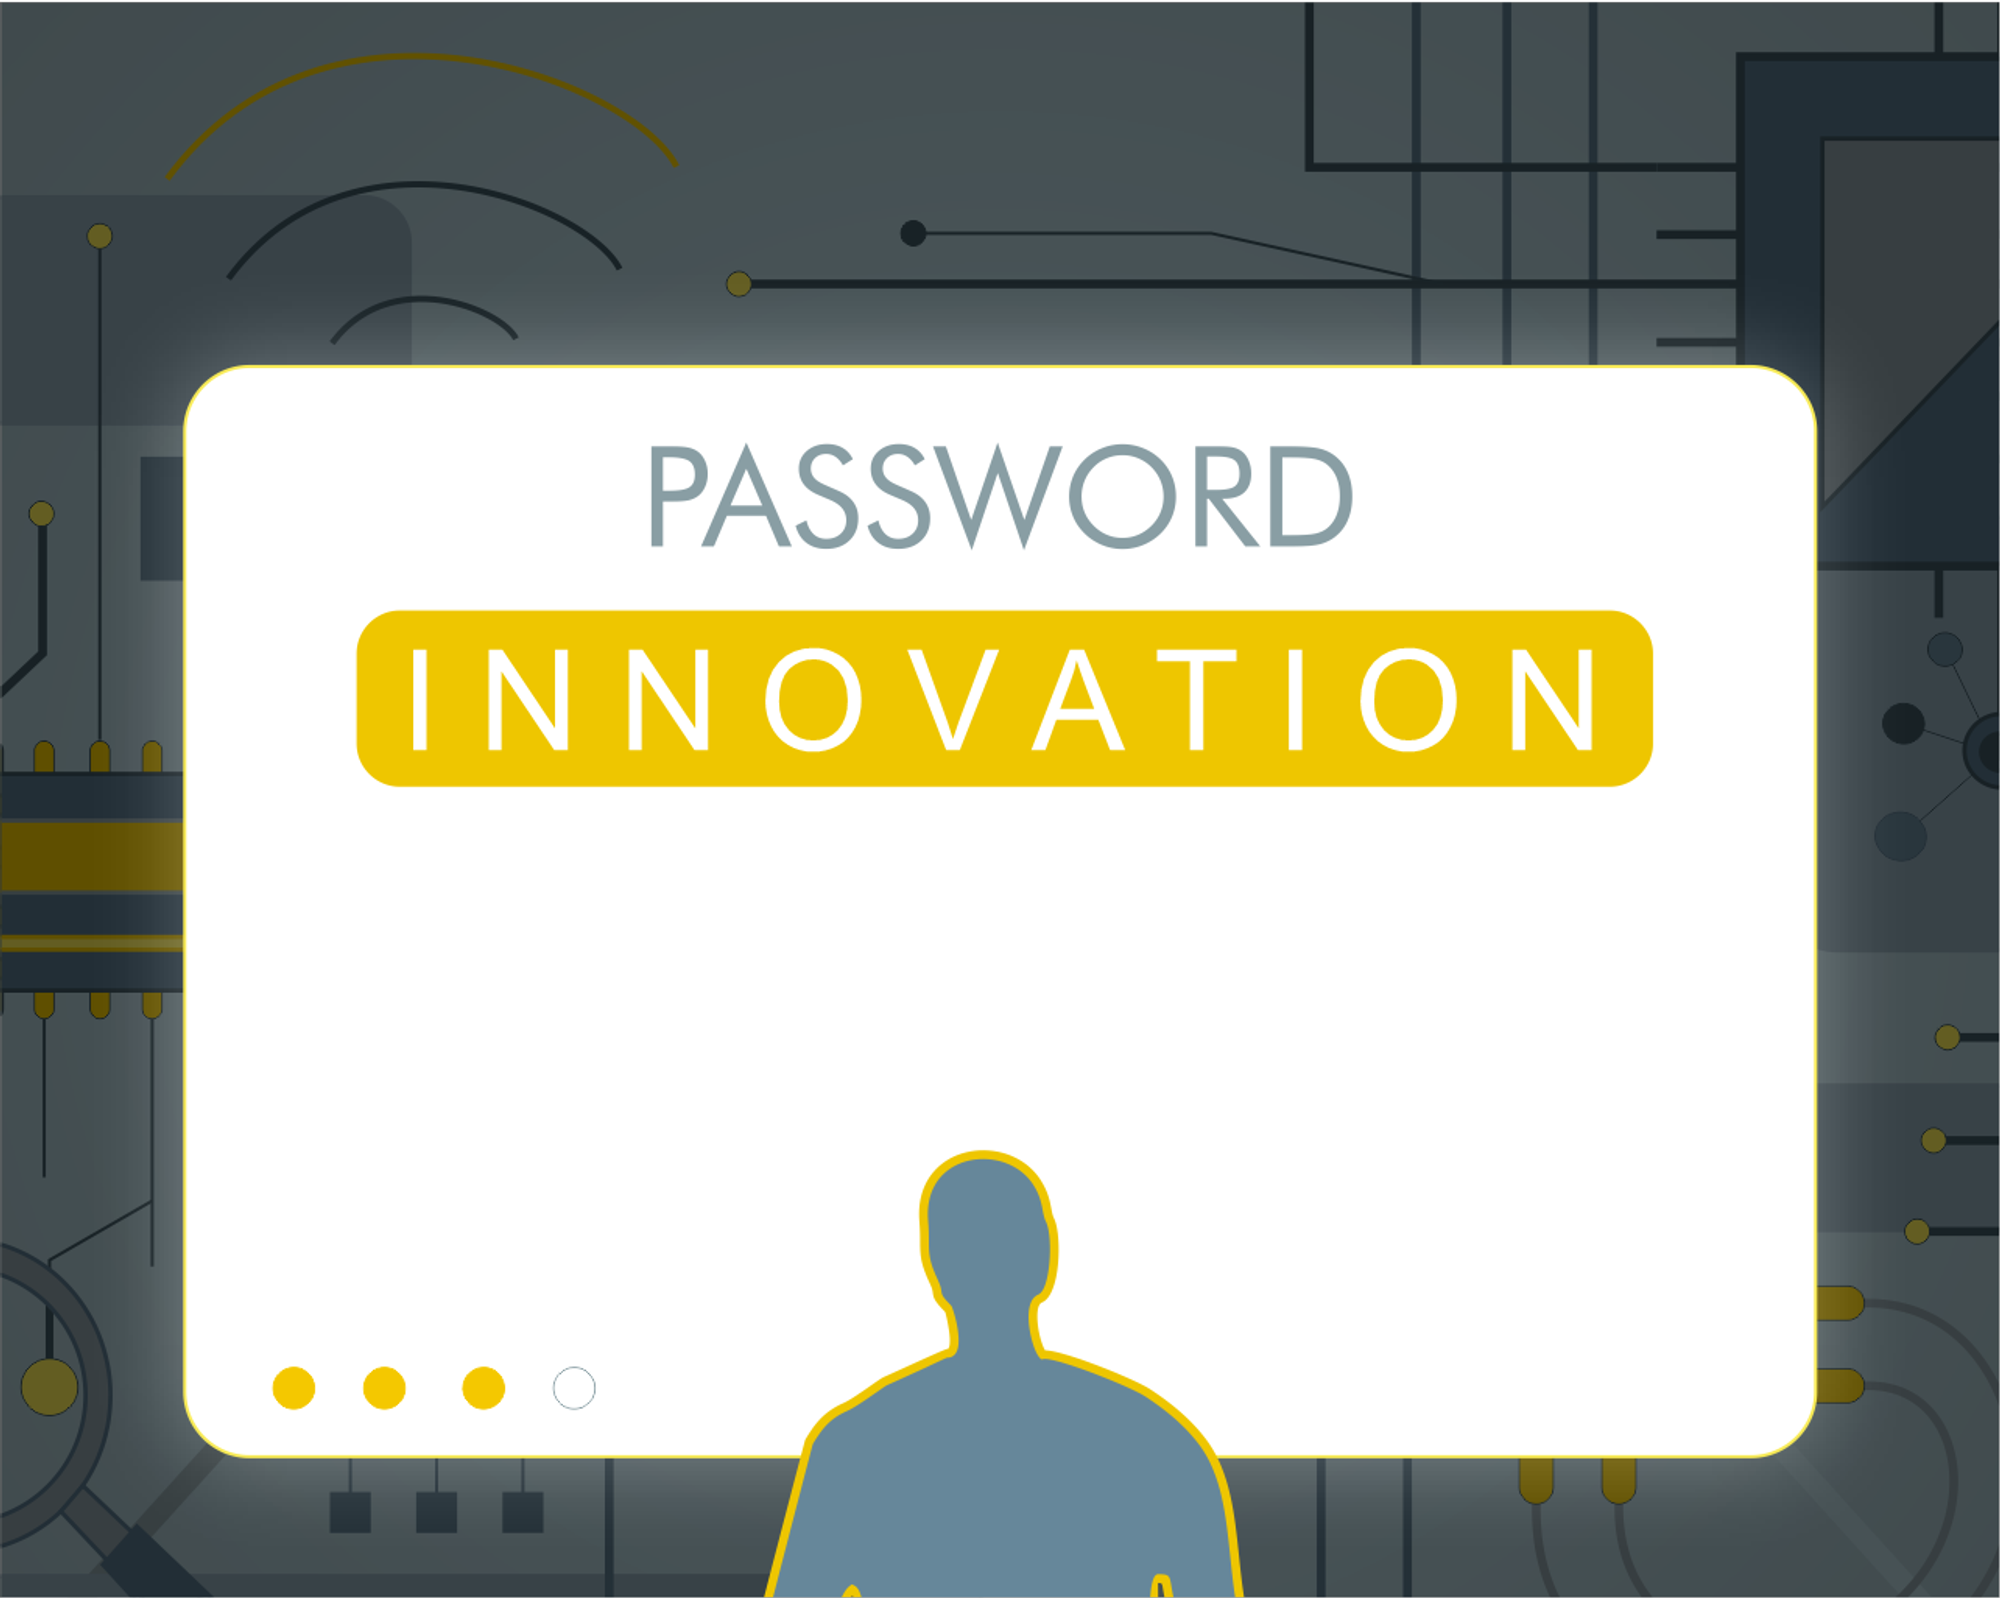 Schlagfertige Spieler sollten in der Lage sein, herauszufinden, dass das Passwort „Innovation“ lautet